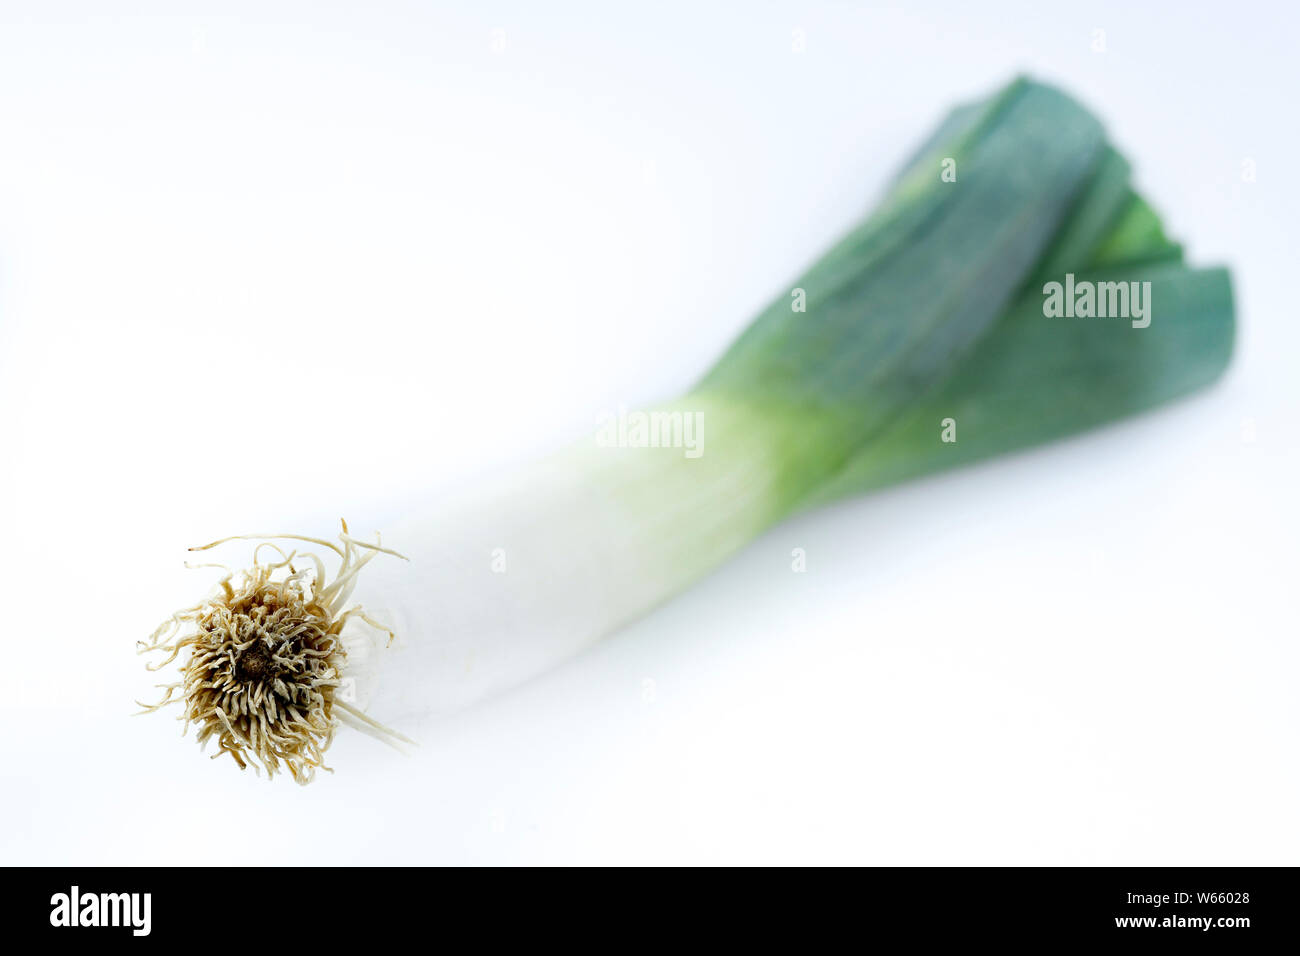 leek, Allium porrum Stock Photo